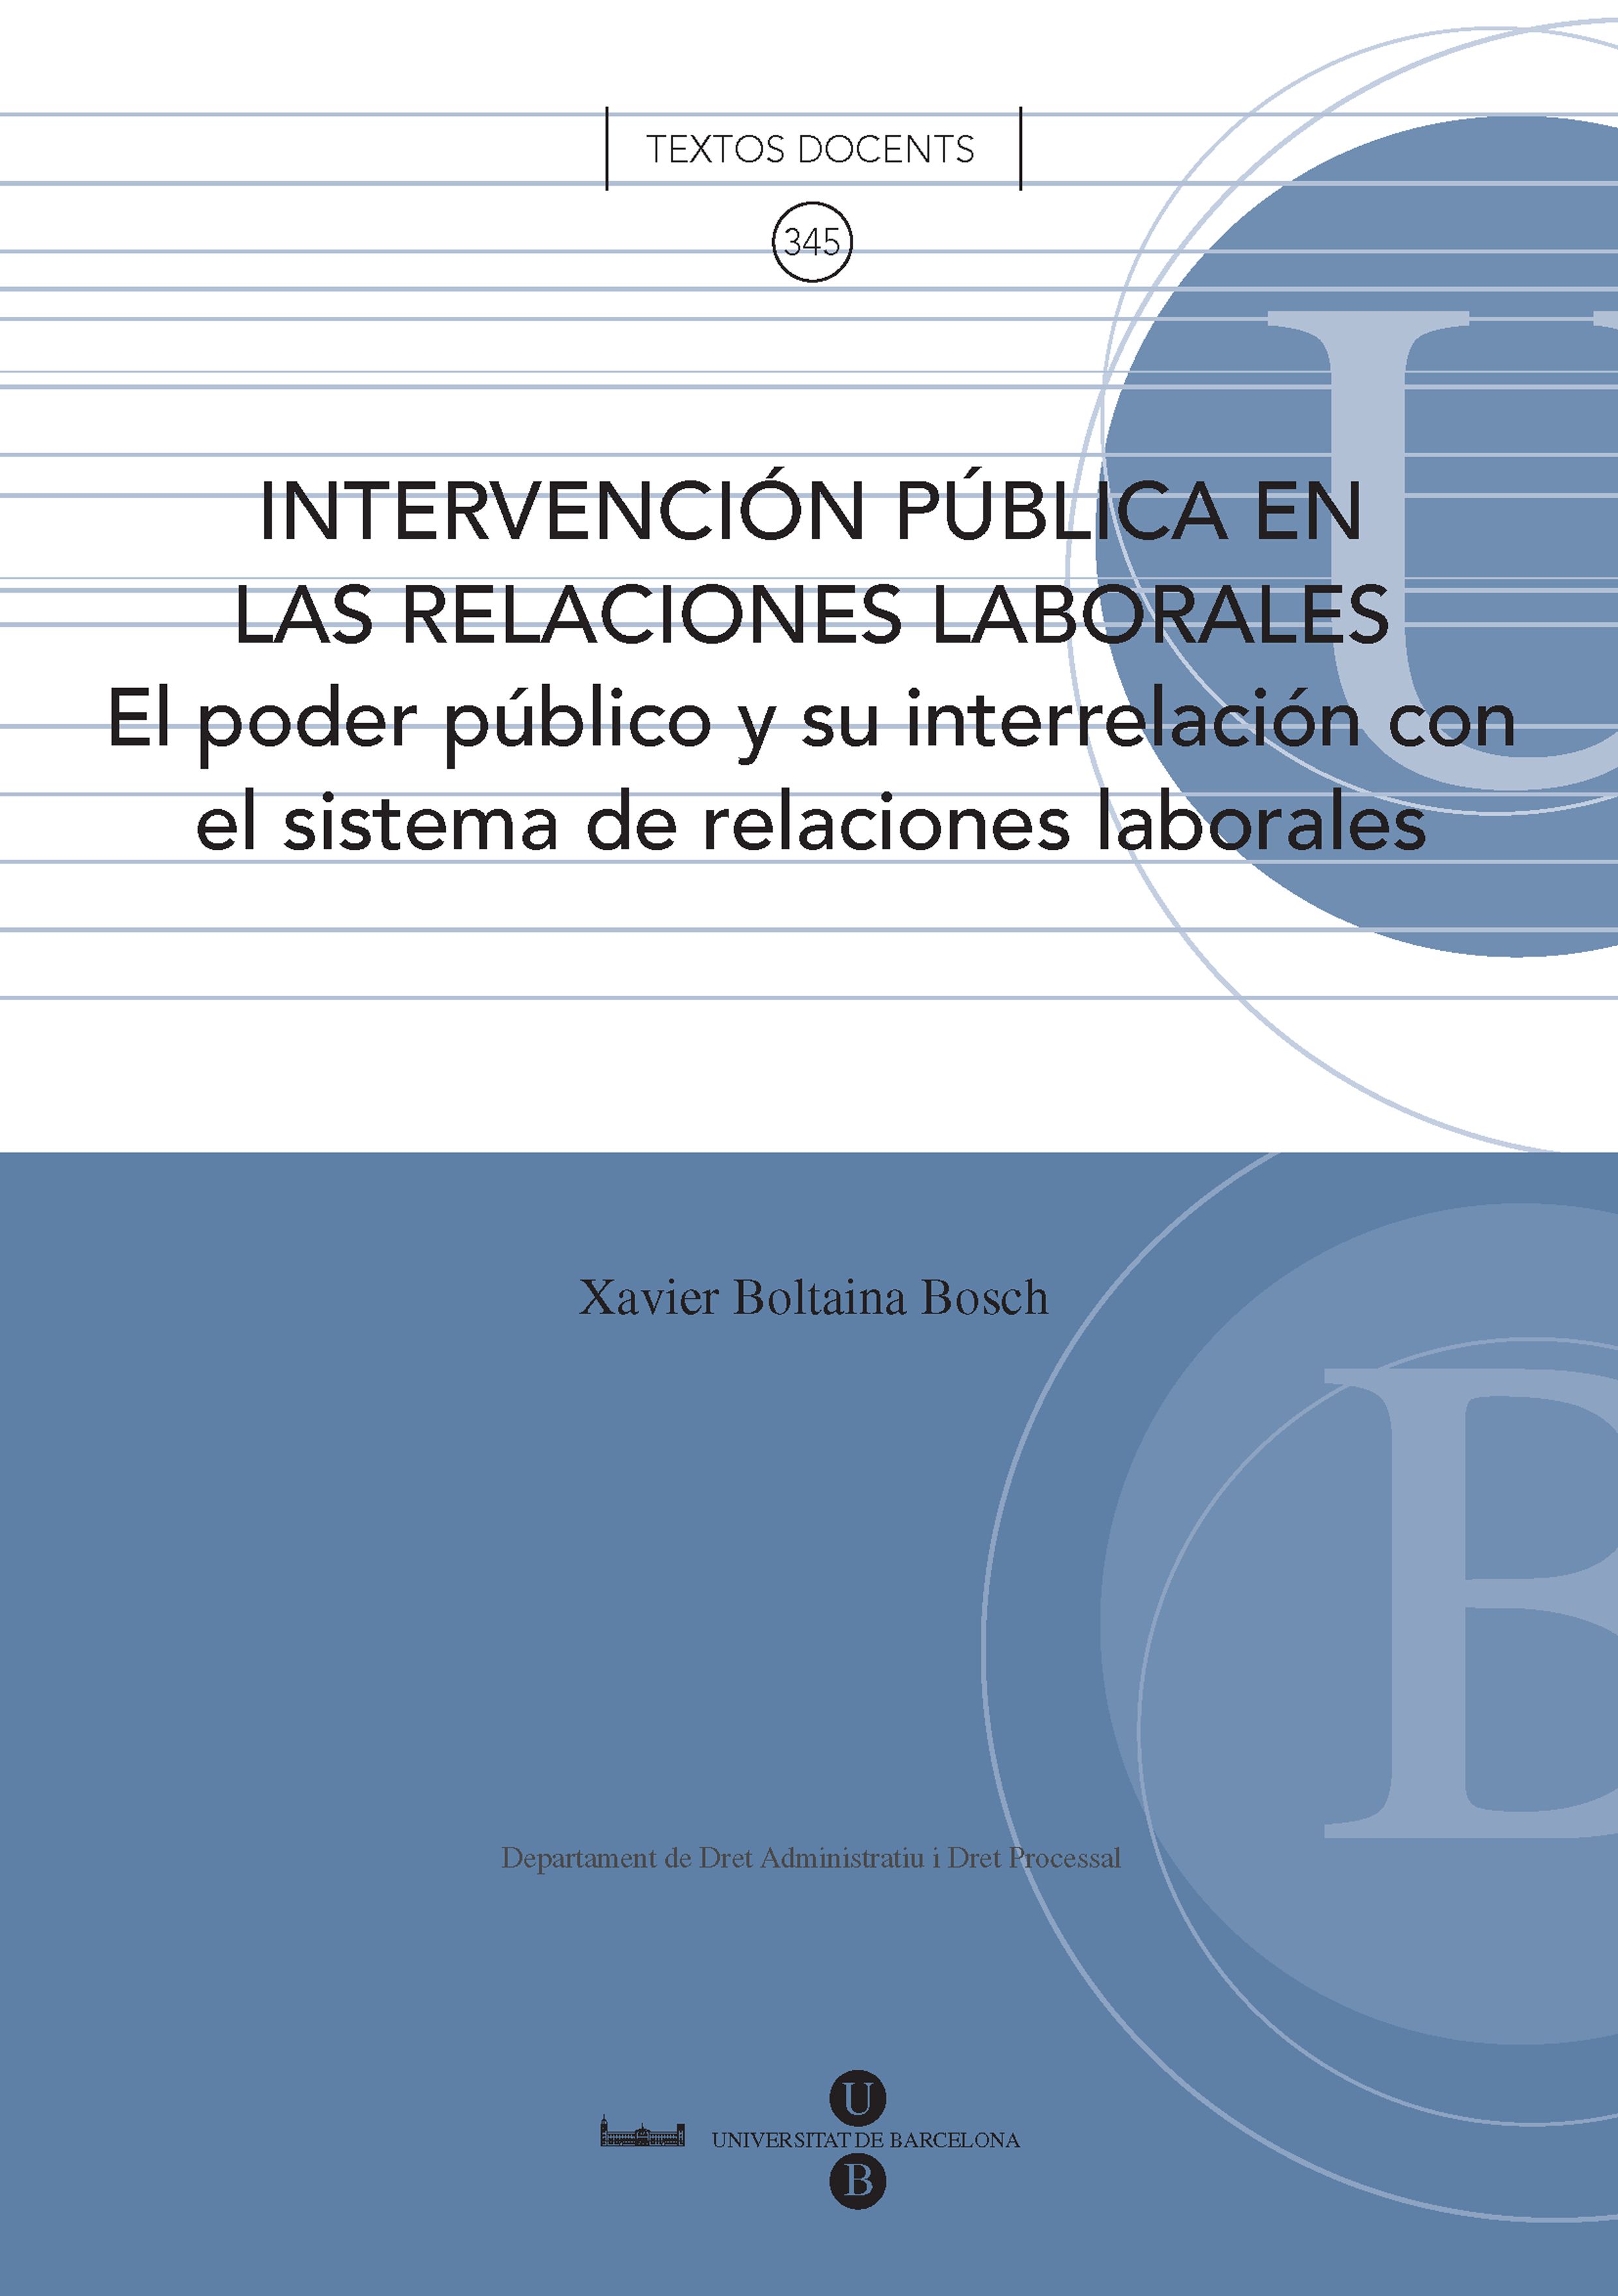 IntervenciÃ³n pÃºblica en las relaciones laborales: el poder pÃºblico y su interrelaciÃ³n con el sistema de relaciones laborales